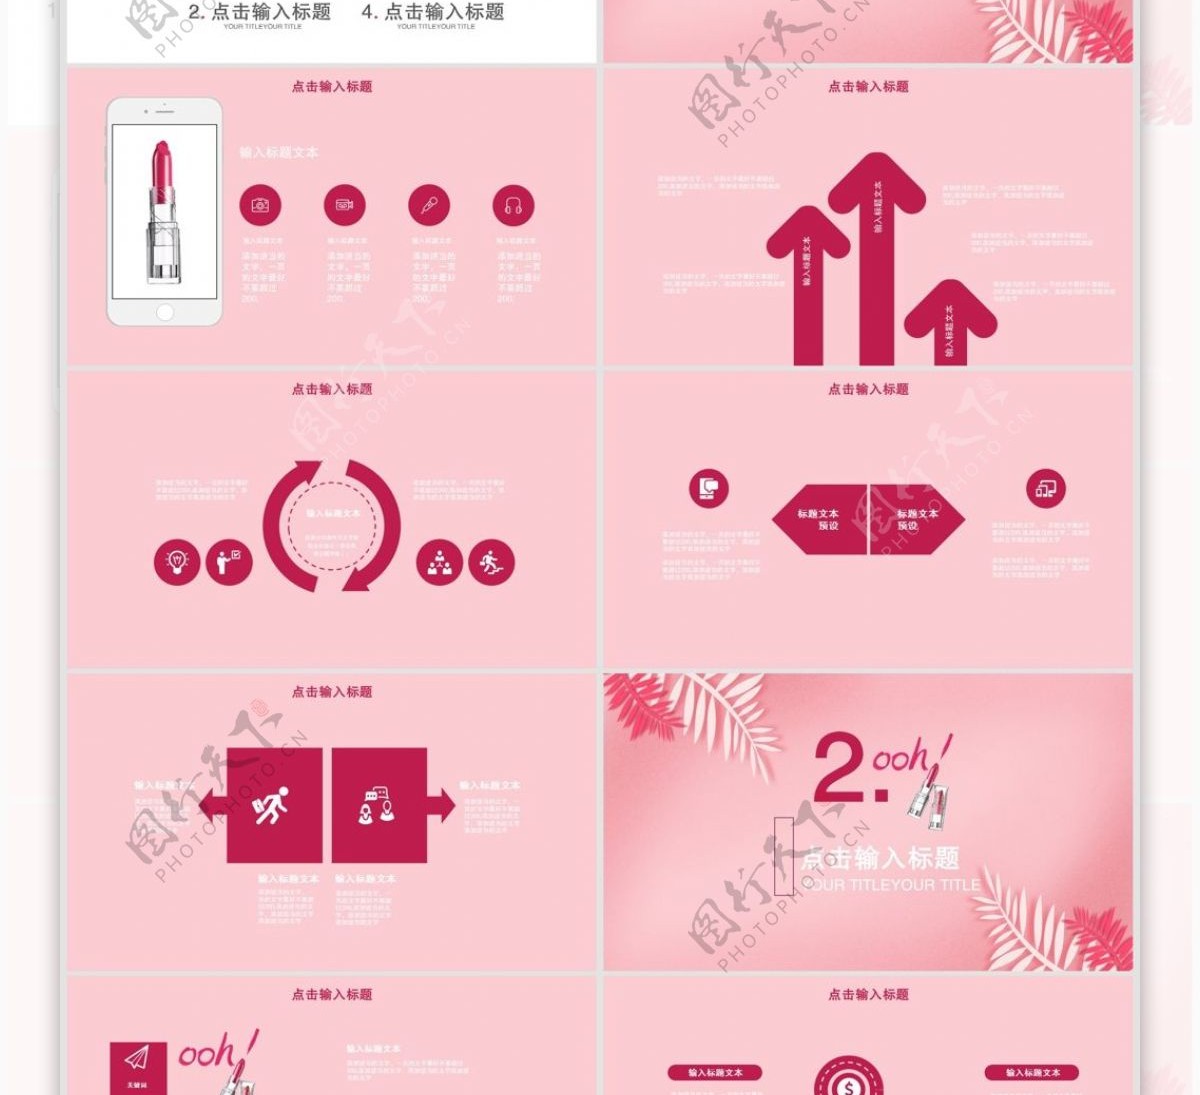 24创意流行时尚彩妆产品发布PPT模板